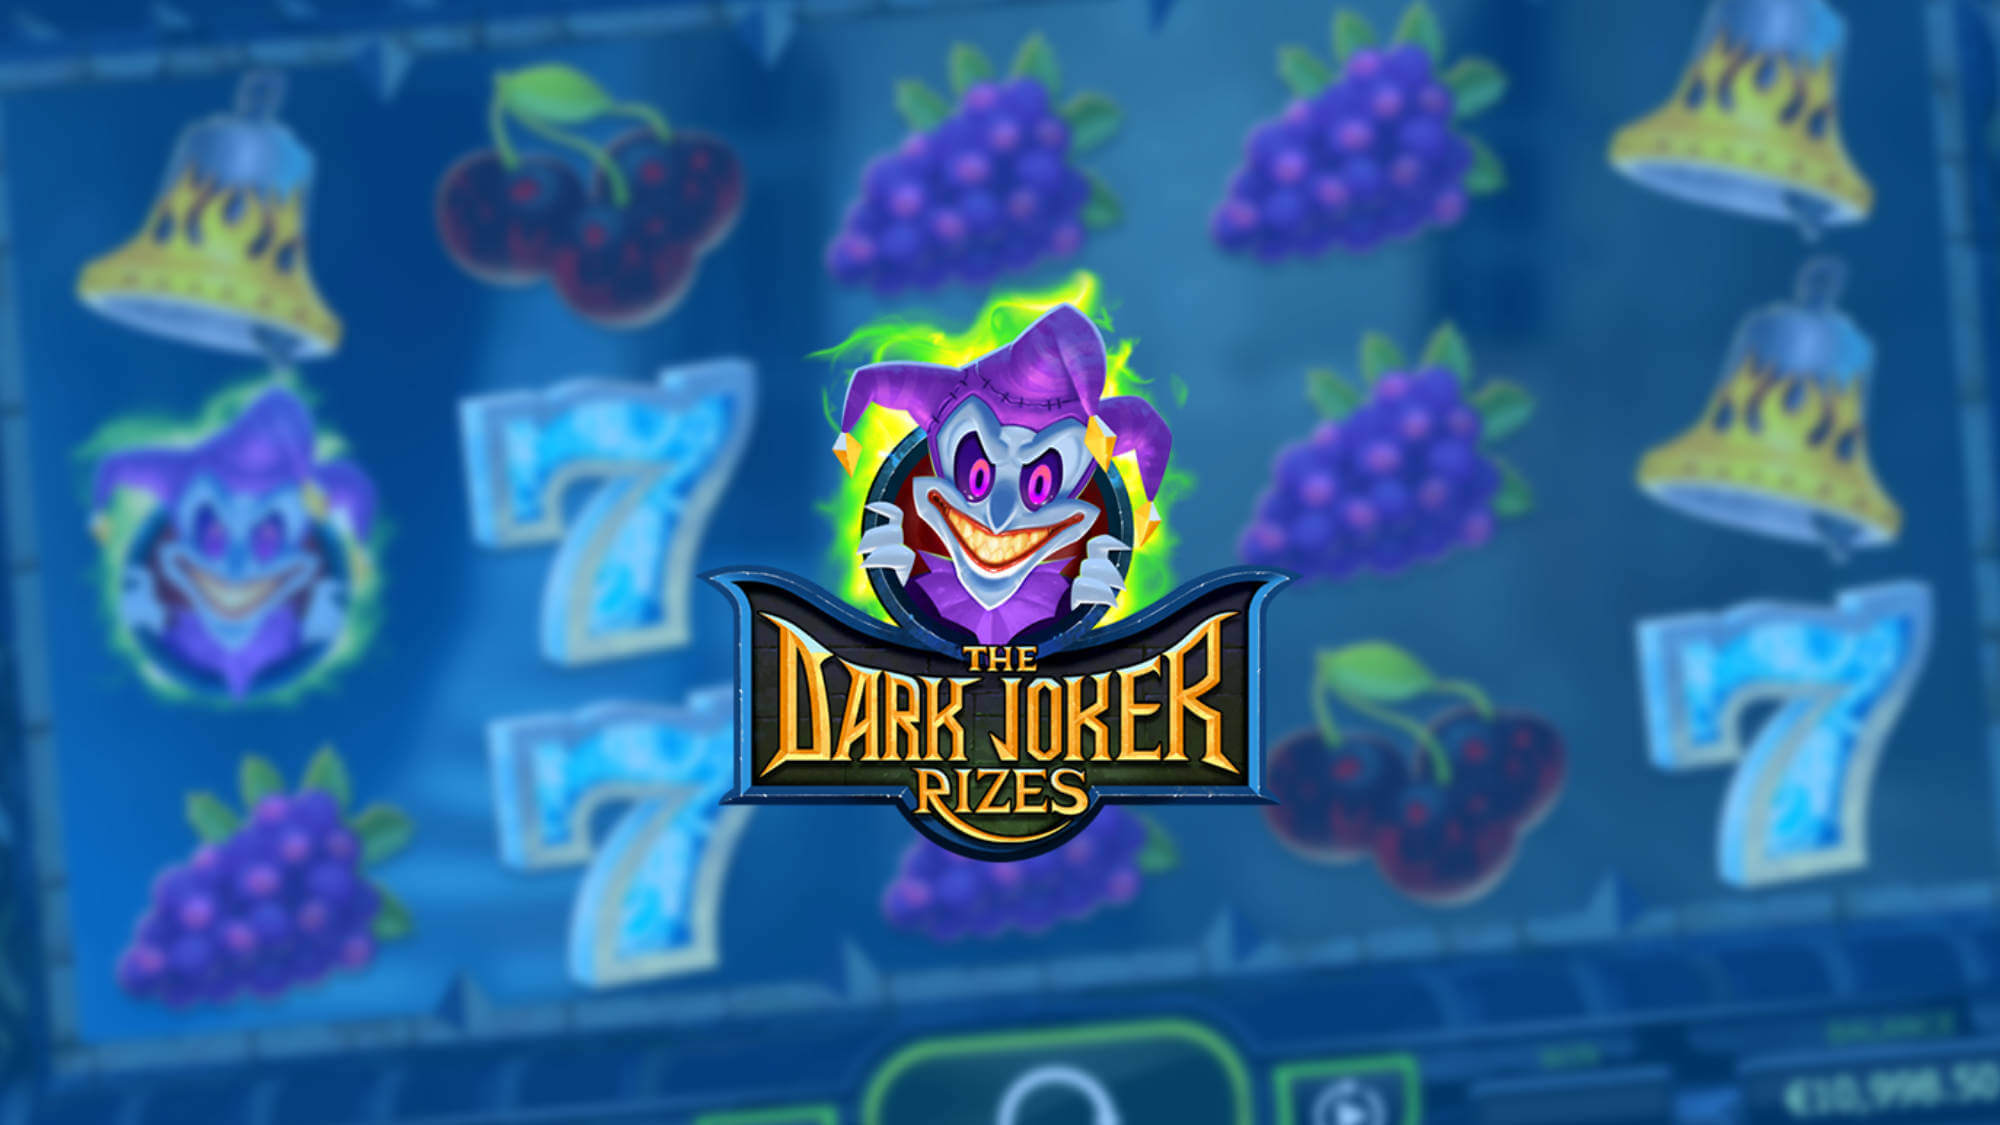 The Dark Joker Rizes gokkast